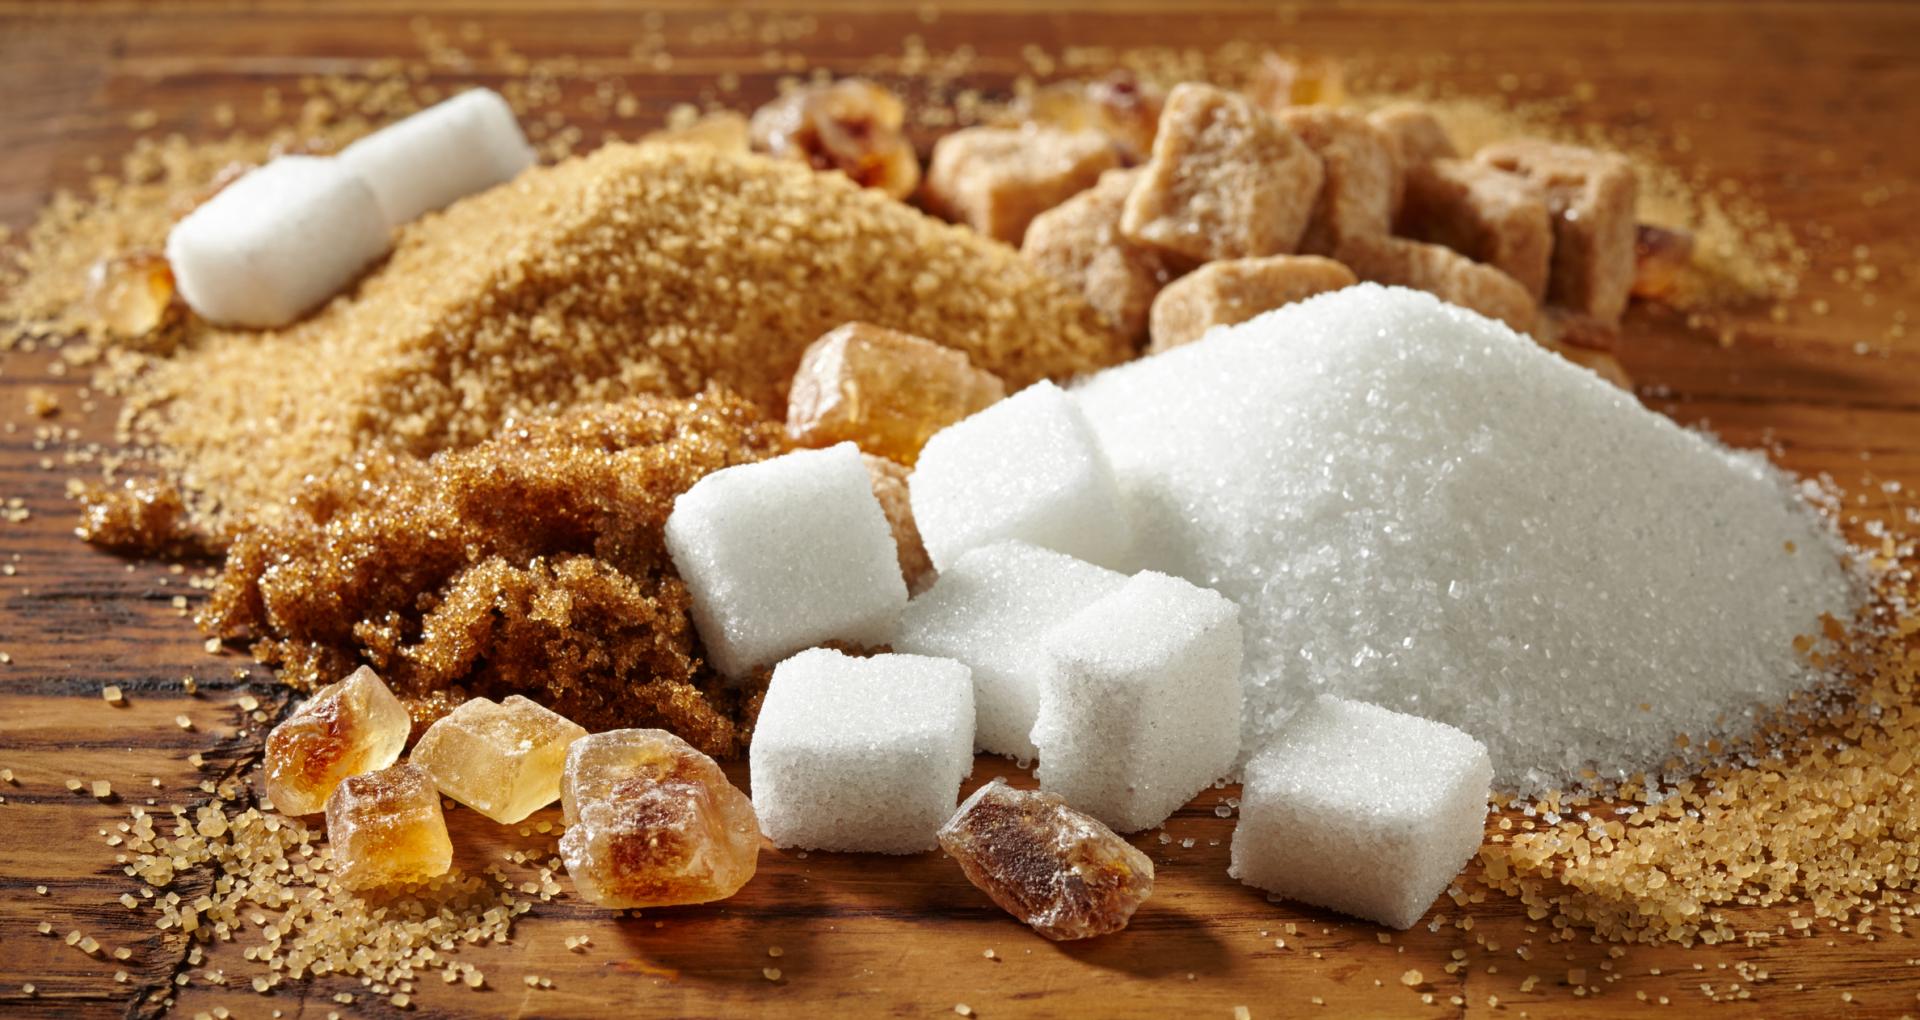 Vianoce sa predražia. Ceny cukru na pultoch za rok stúpli o polovicu a trh stojí pred ďalším pohybom